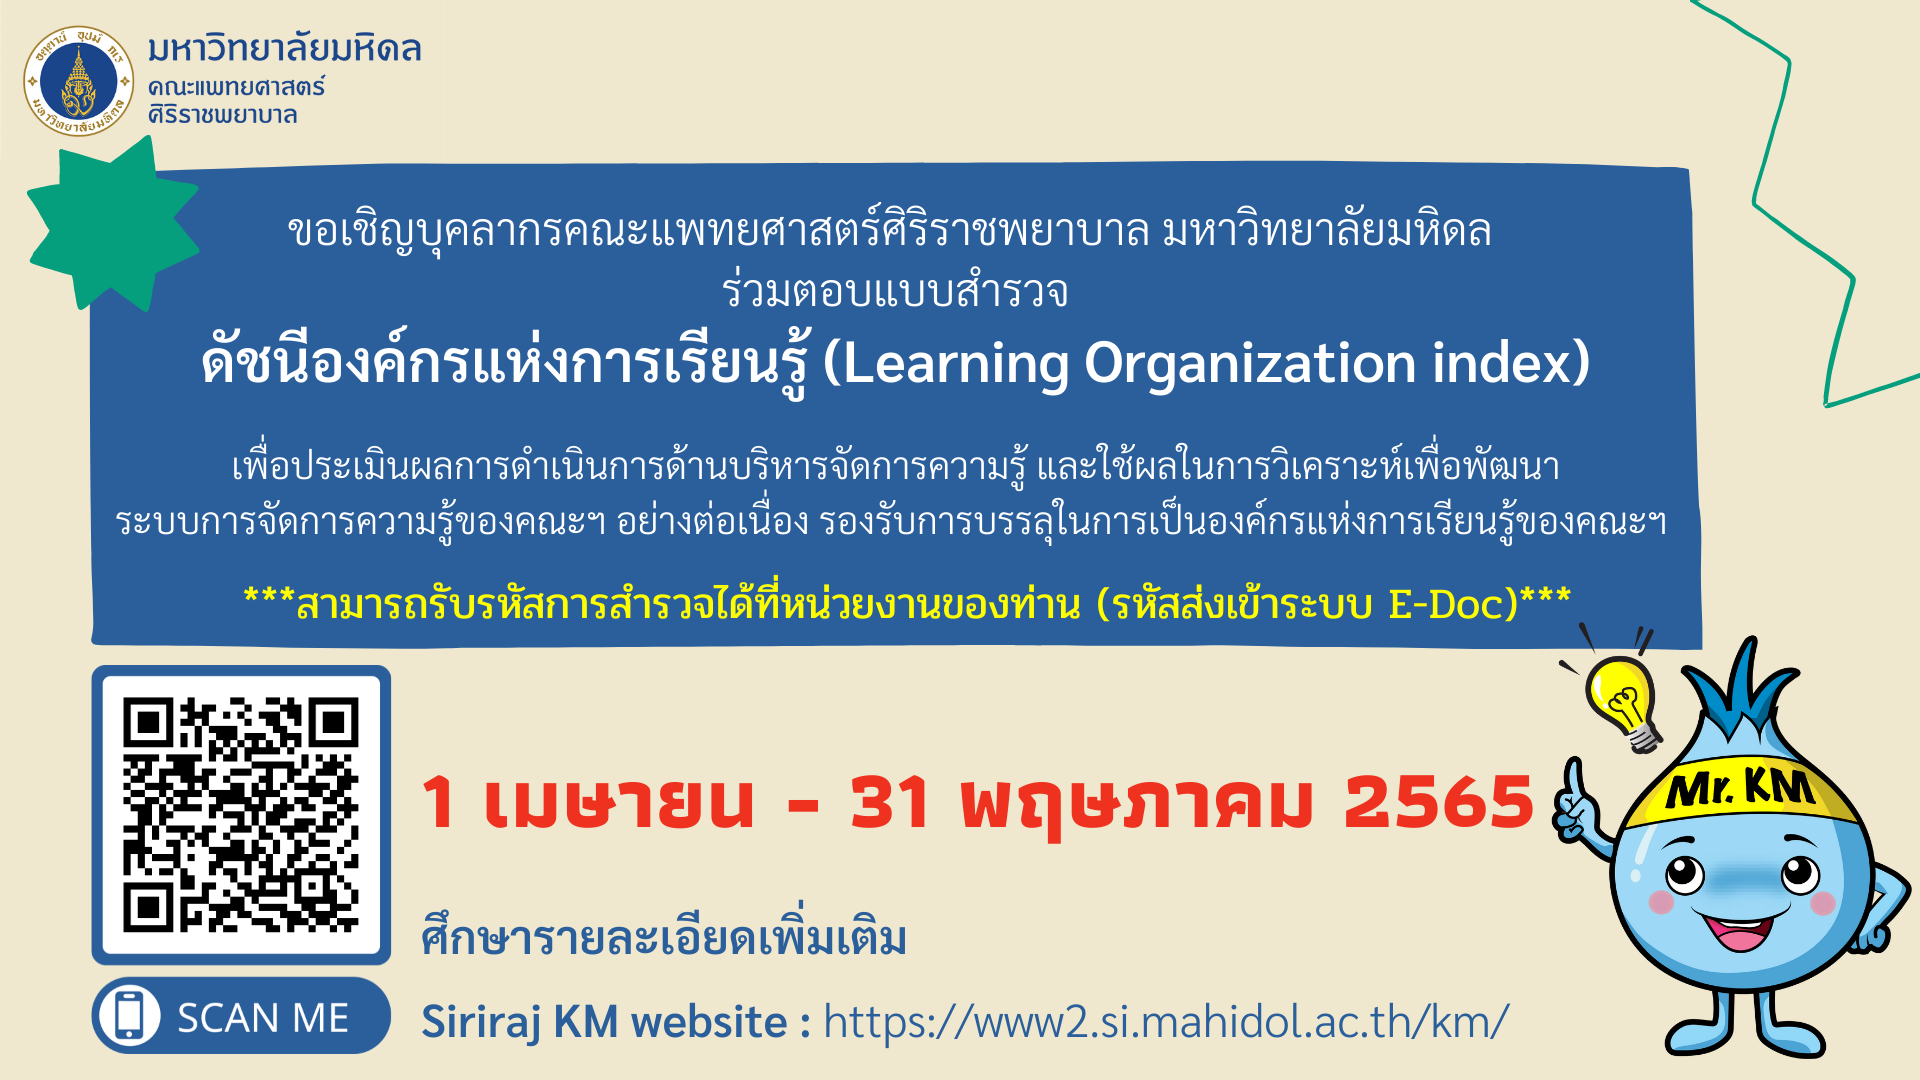 ร่วมตอบแบบสำรวจดัชนีองค์กรแห่งการเรียนรู้ (Learning Organization index)